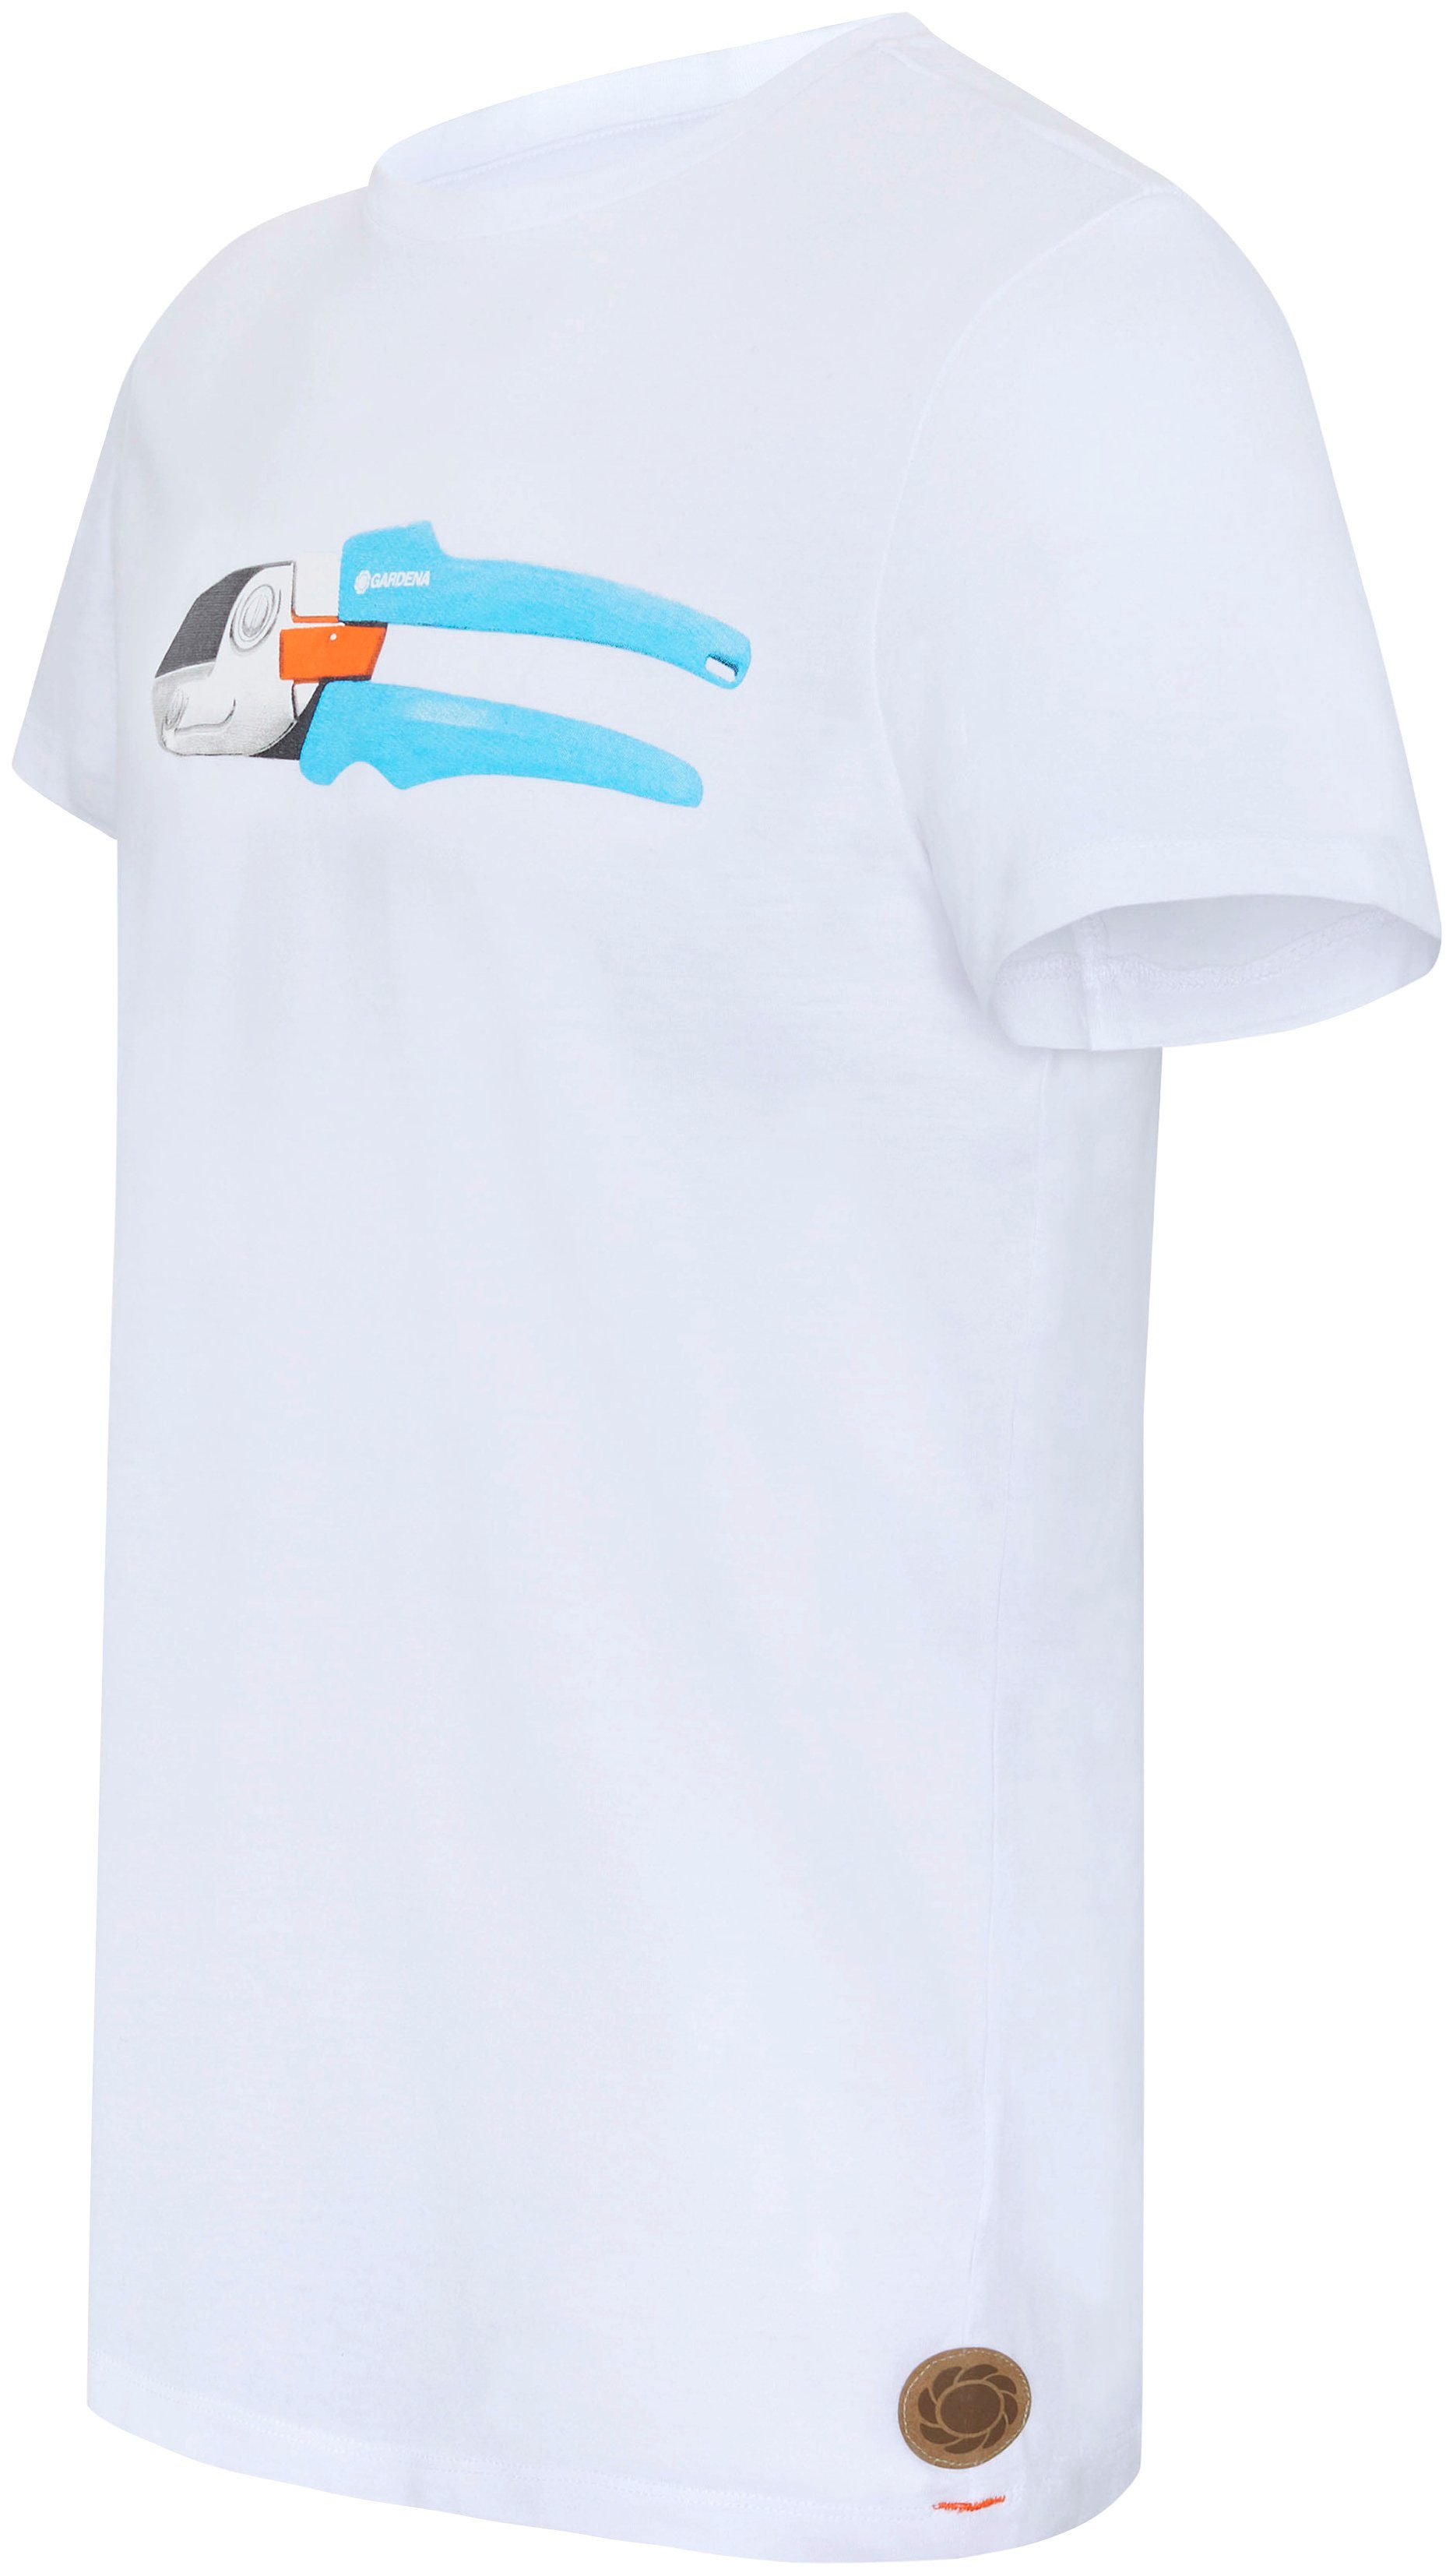 GARDENA T-Shirt Bright Aufdruck mit White